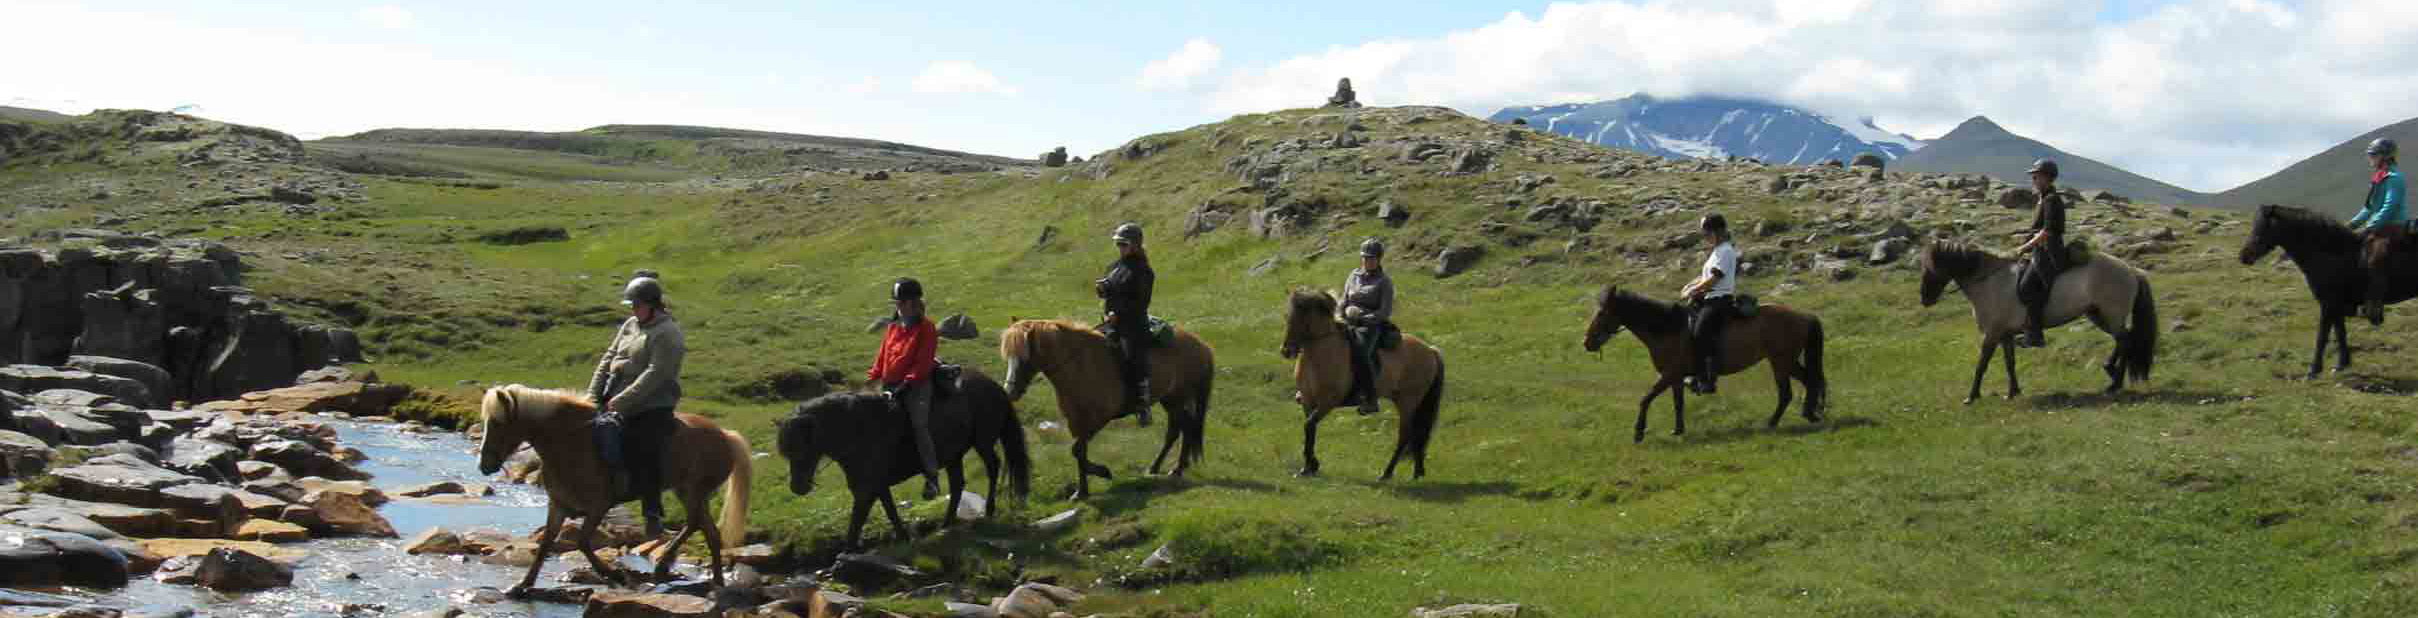 Randonnée Equestre dans la Région d'Egilsstadir, sur les traces des Vikings - Randocheval / AbsoluVoyages